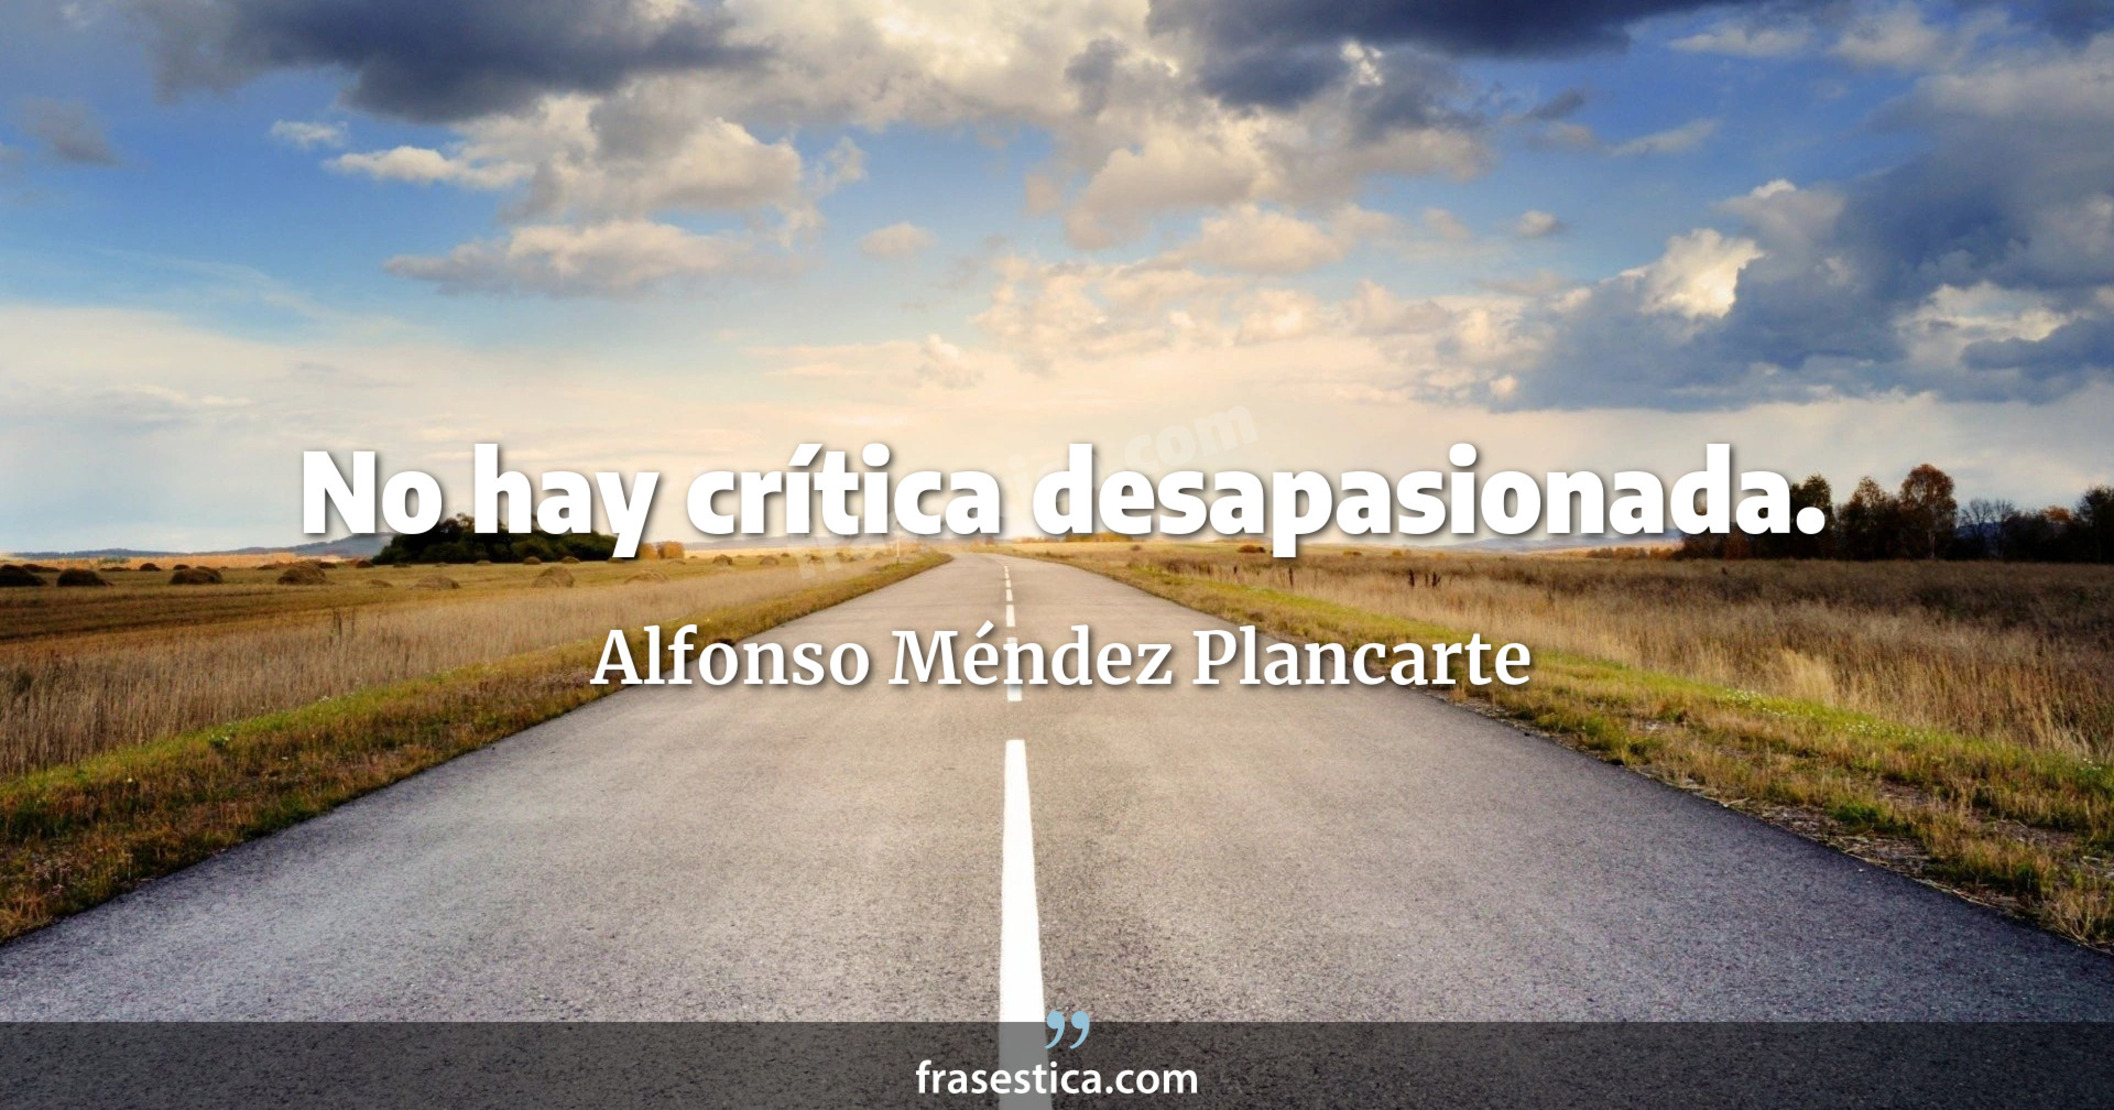 No hay crítica desapasionada. - Alfonso Méndez Plancarte